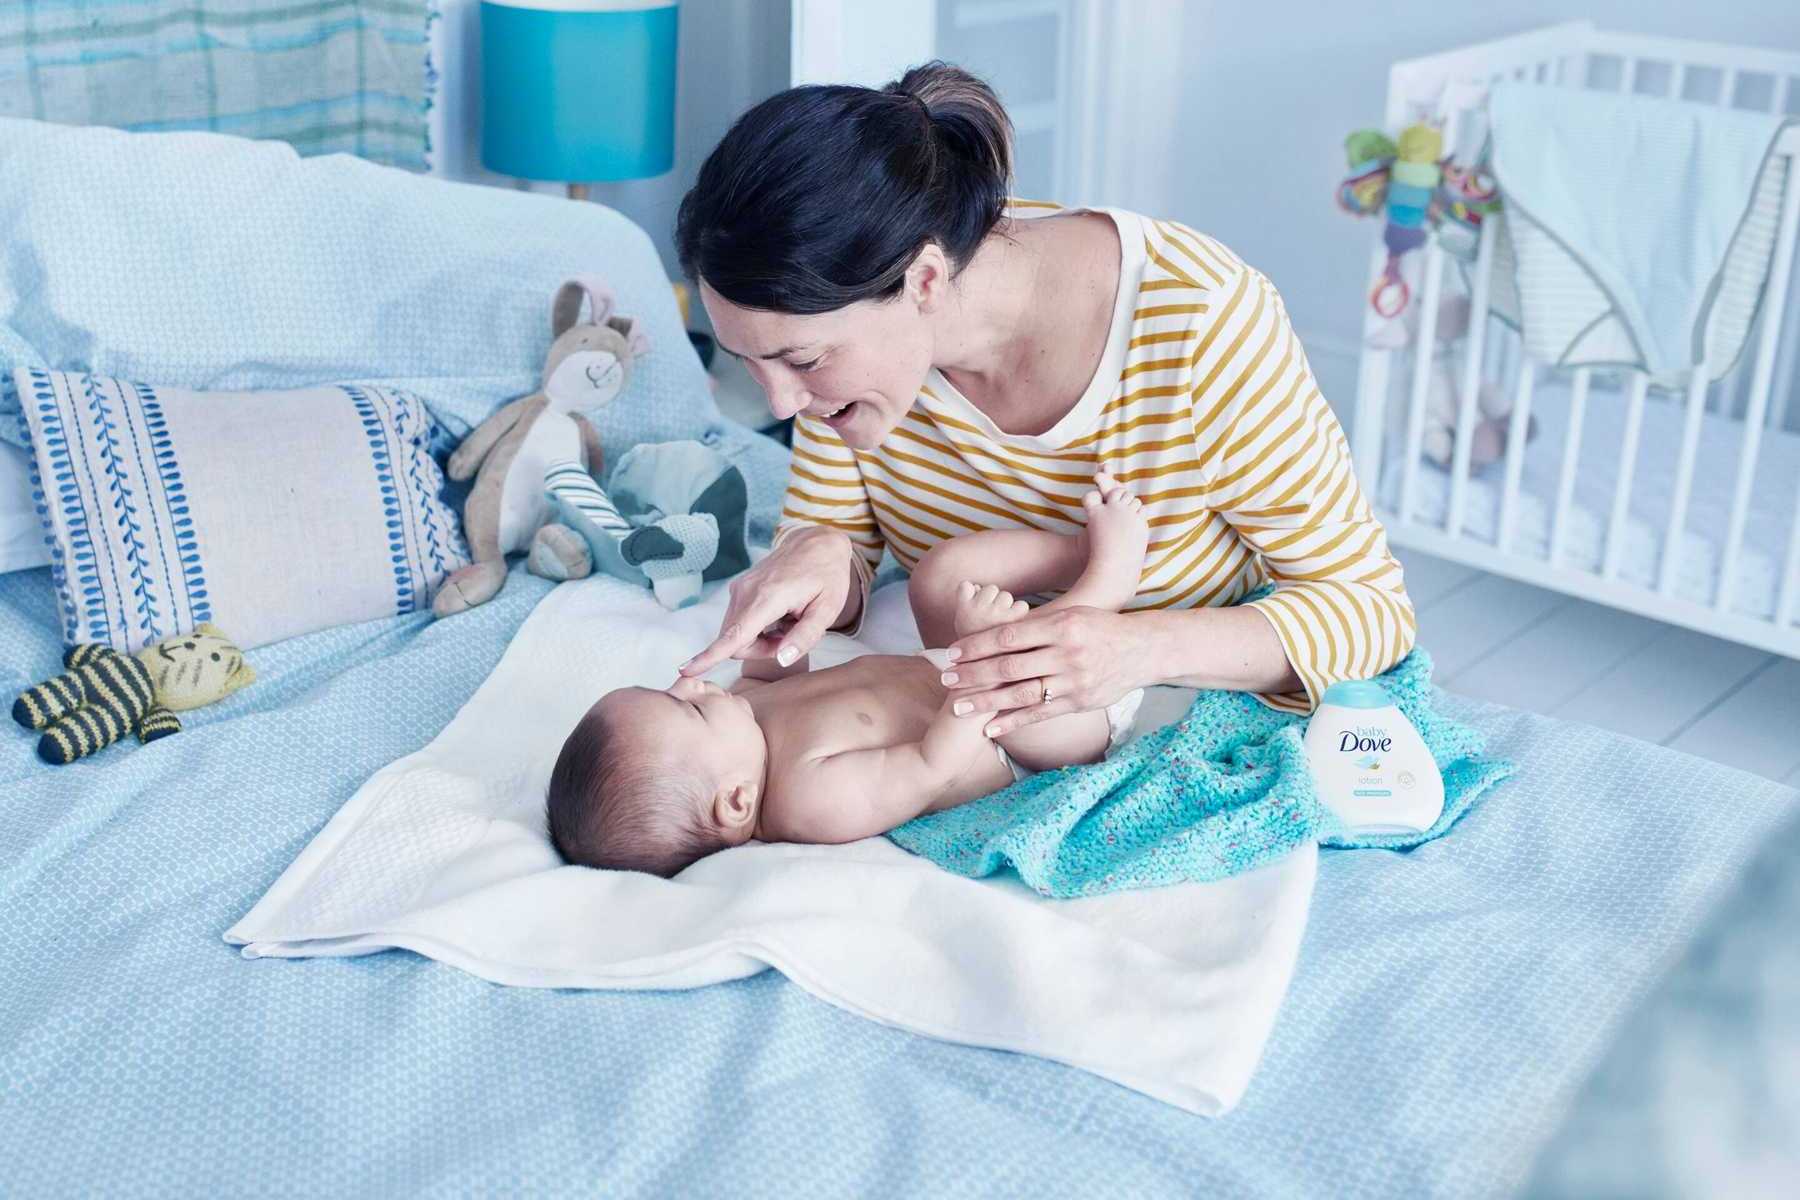 Cách chăm sóc trẻ sơ sinh cho đến khi đầy tháng cho người lần đầu làm mẹ